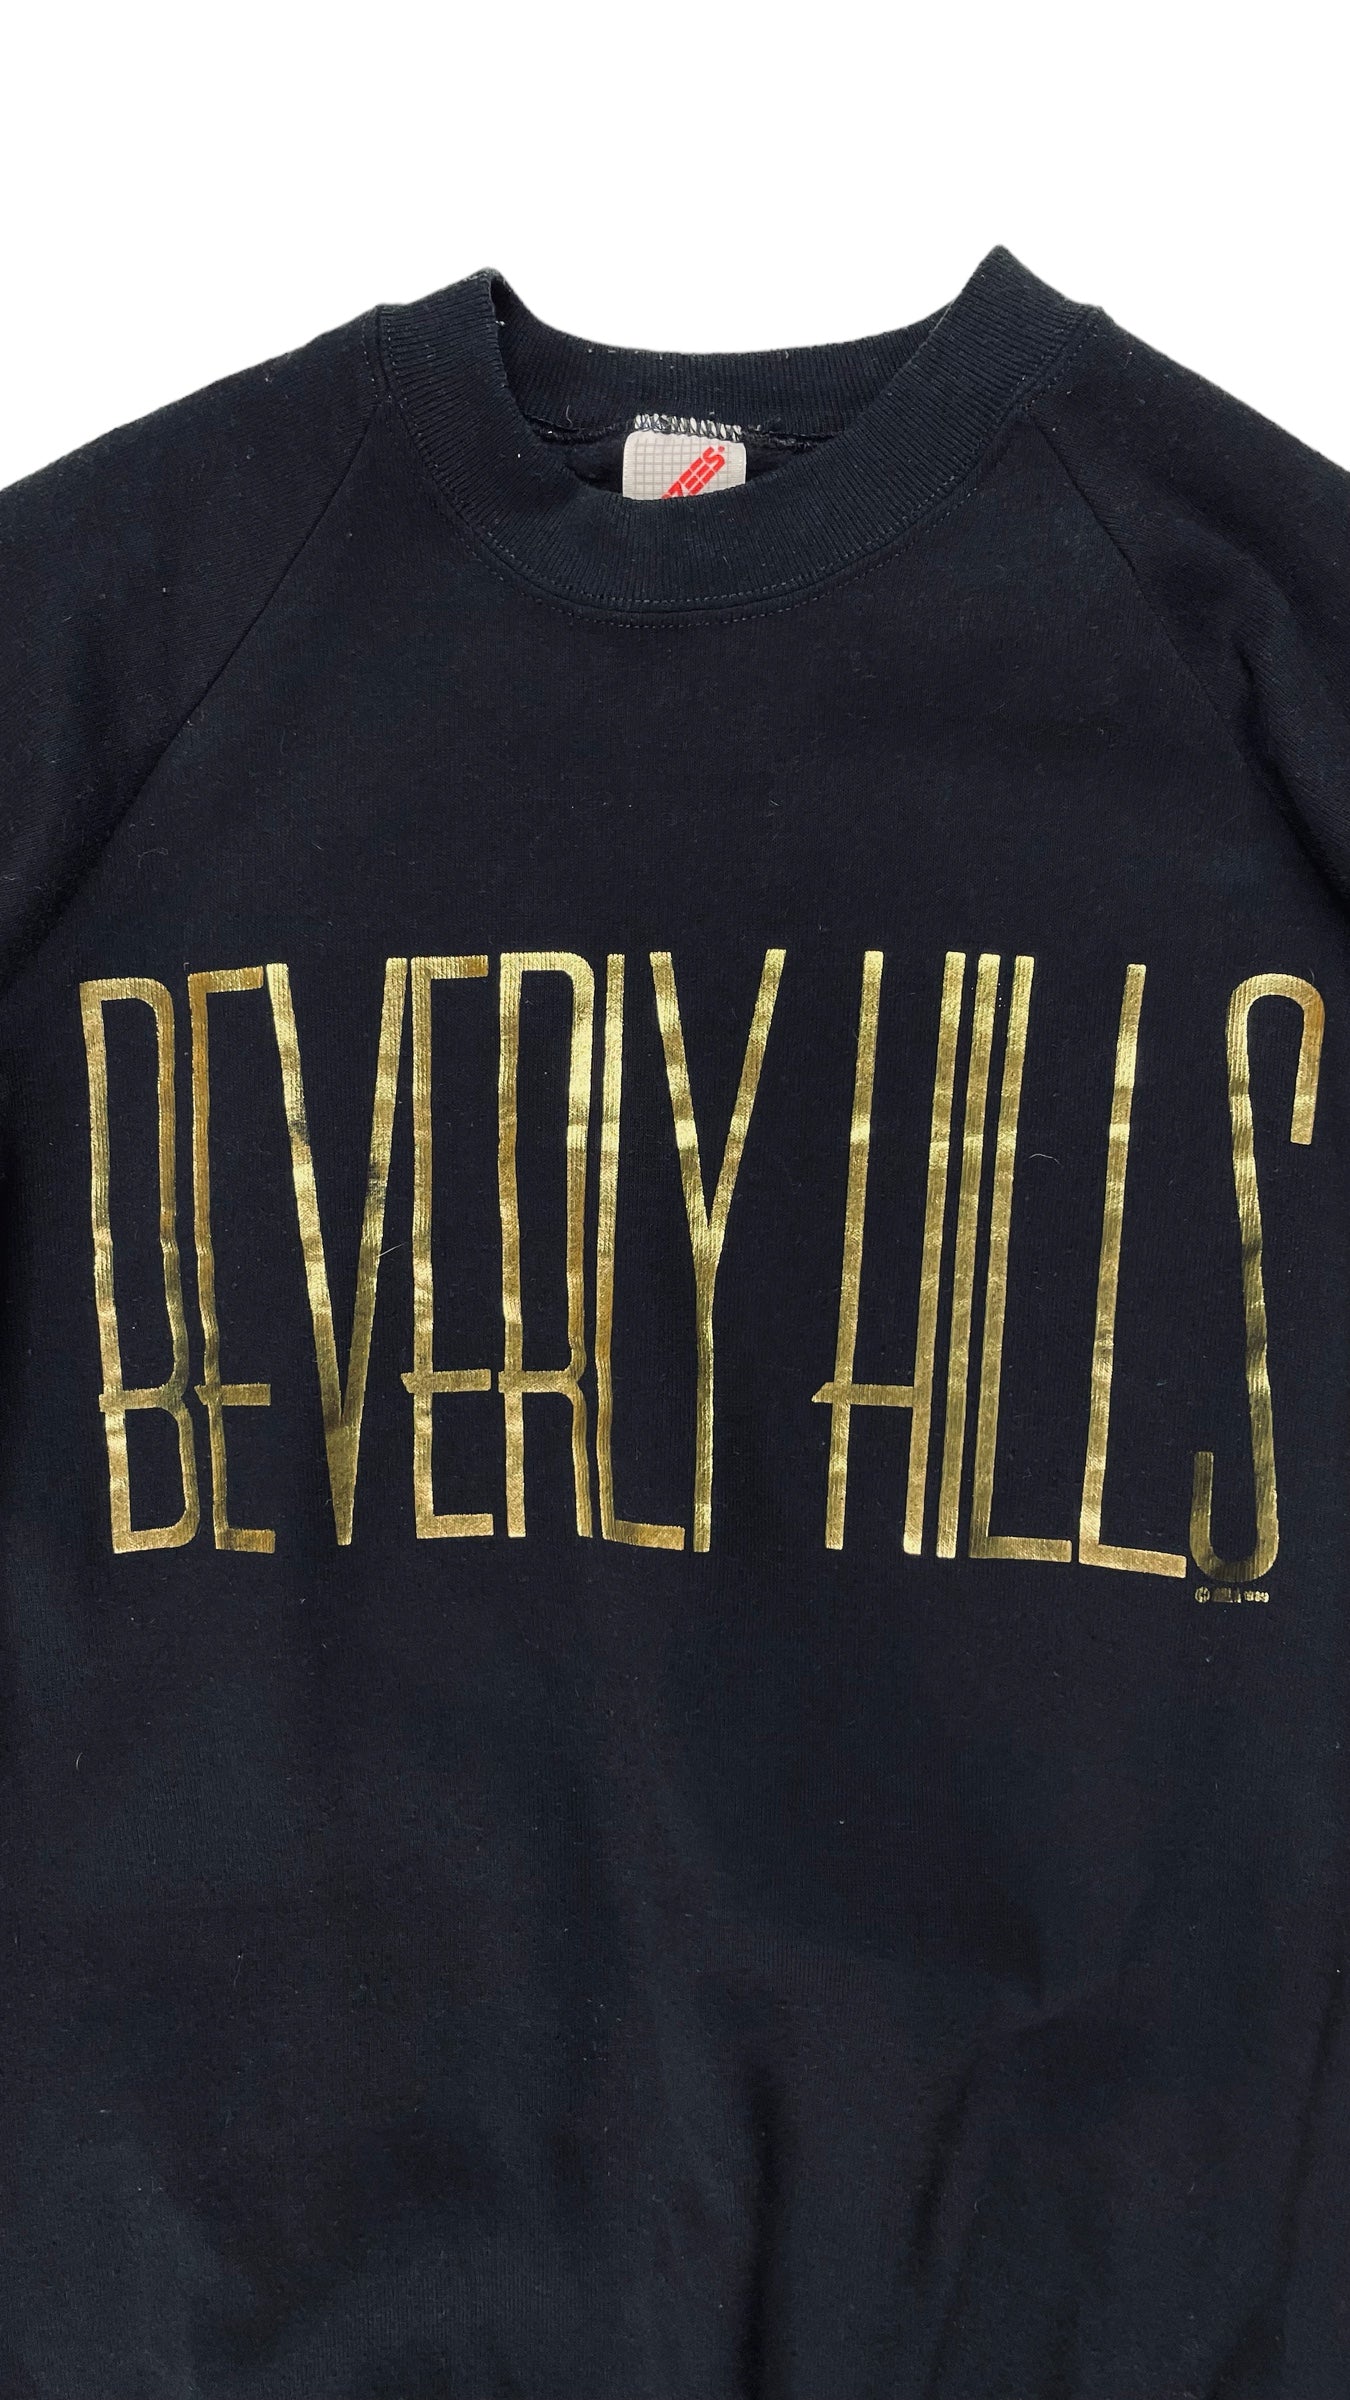 Vintage 80s black Beverly Hills souvenier sweatshirt - Size L